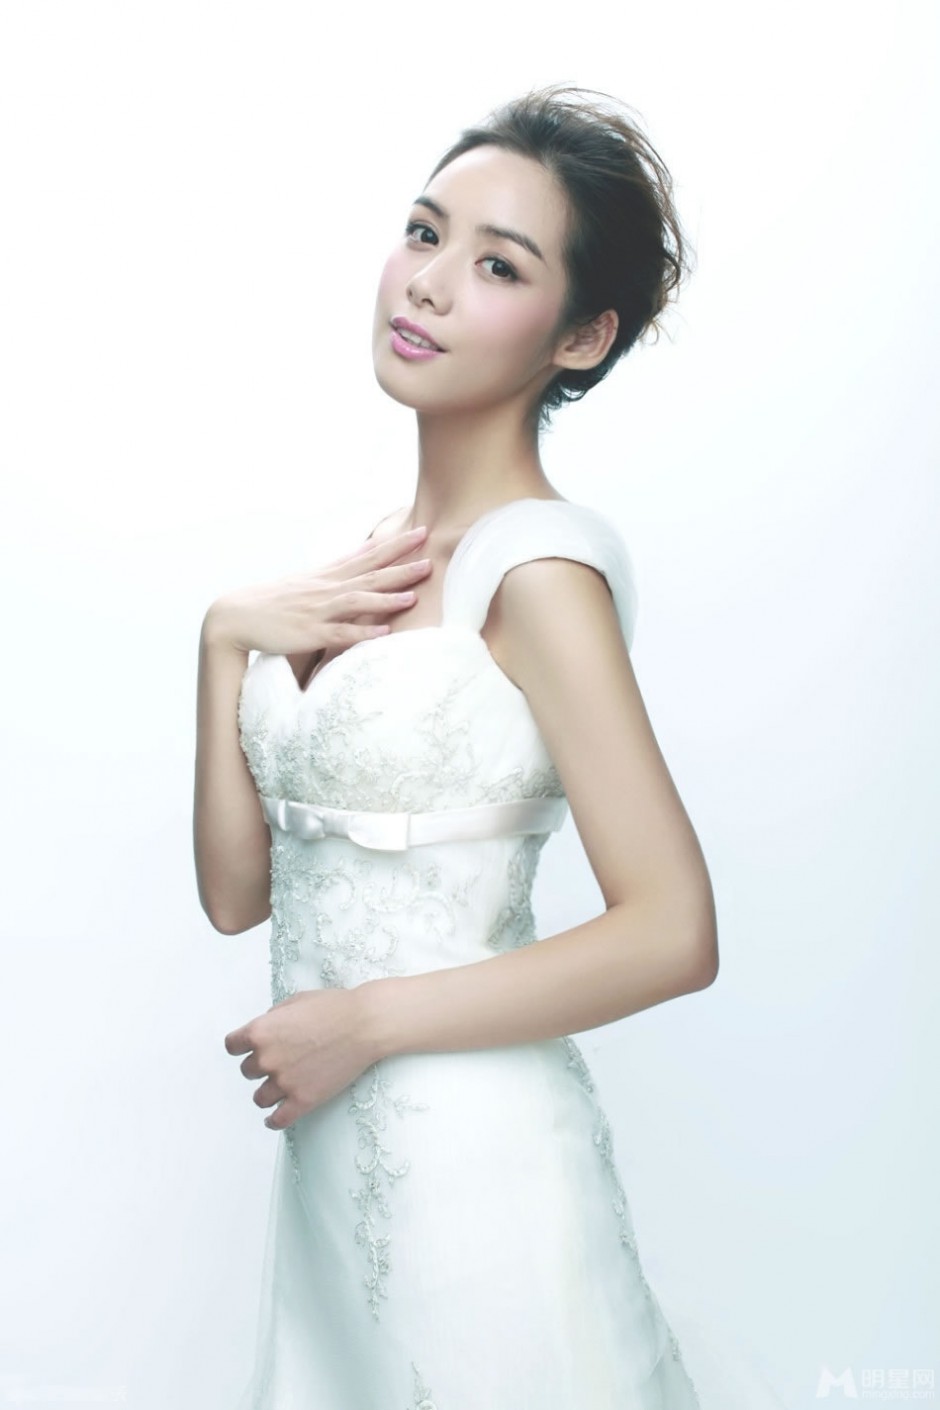 非常完美主持人陈怡新娘造型纯白写真